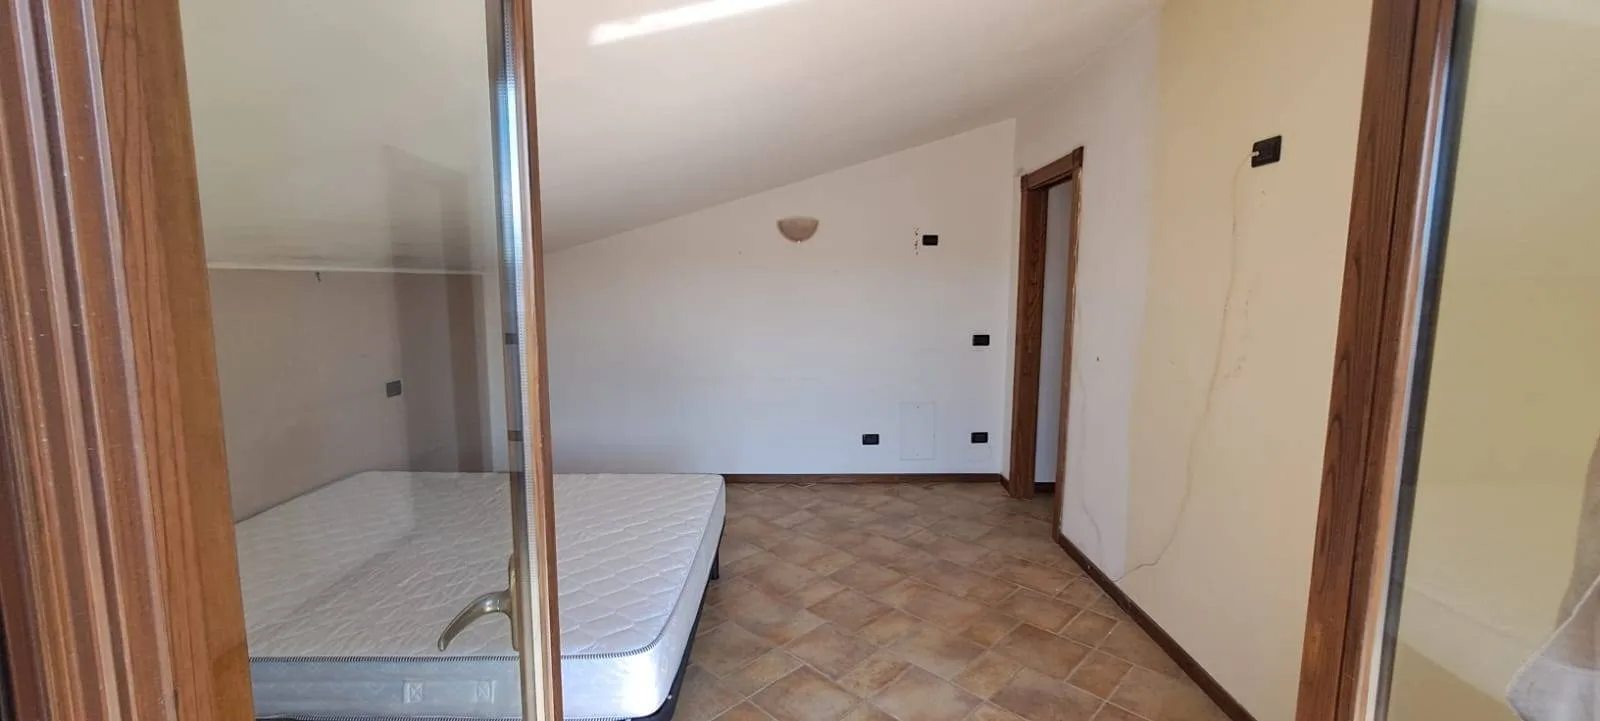 Immagine per Appartamento in vendita a Villaricca Via consolare campana